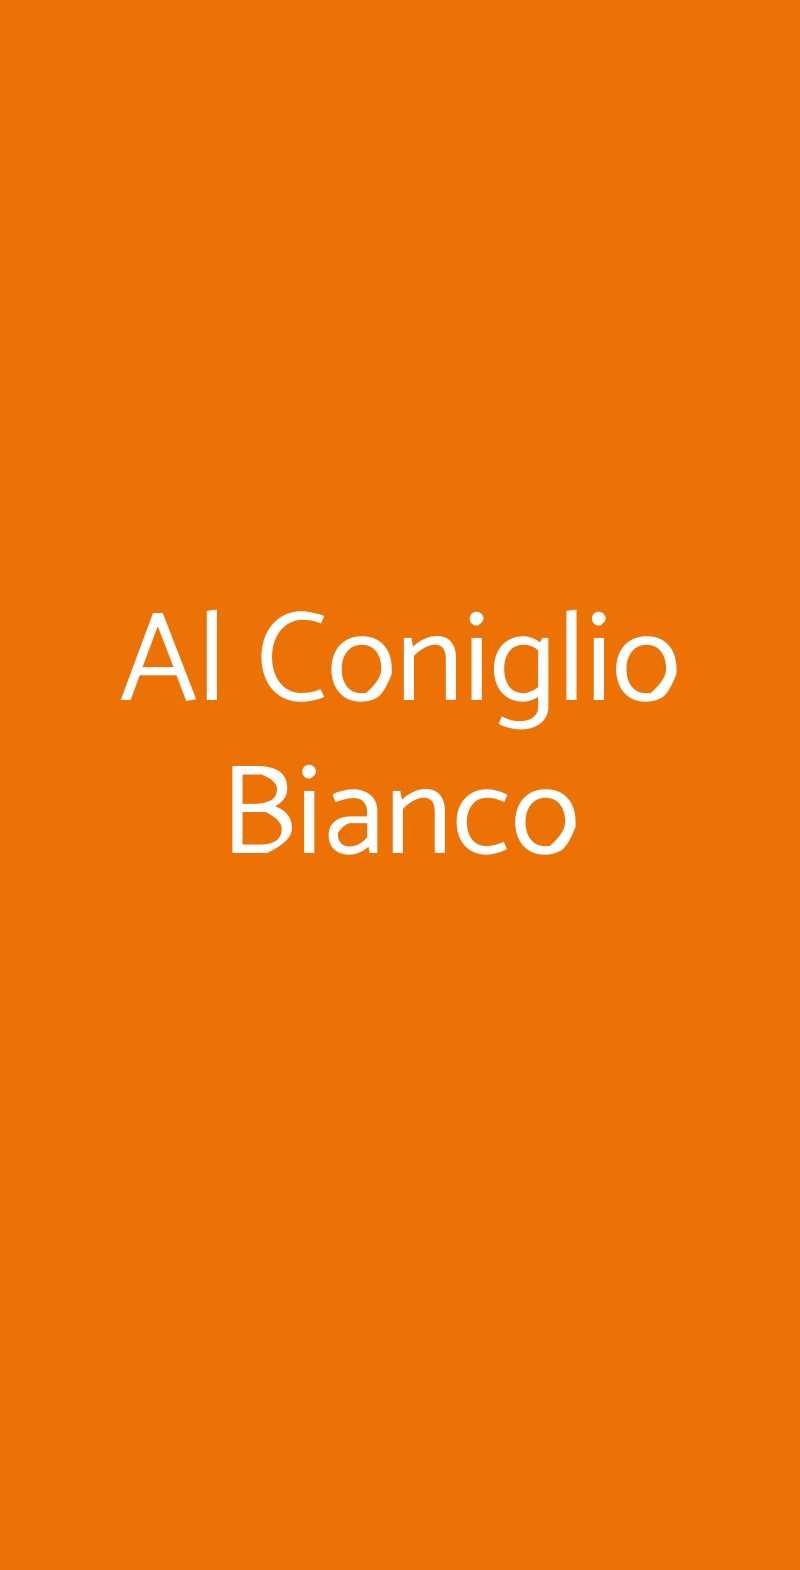 Al Coniglio Bianco Milano menù 1 pagina